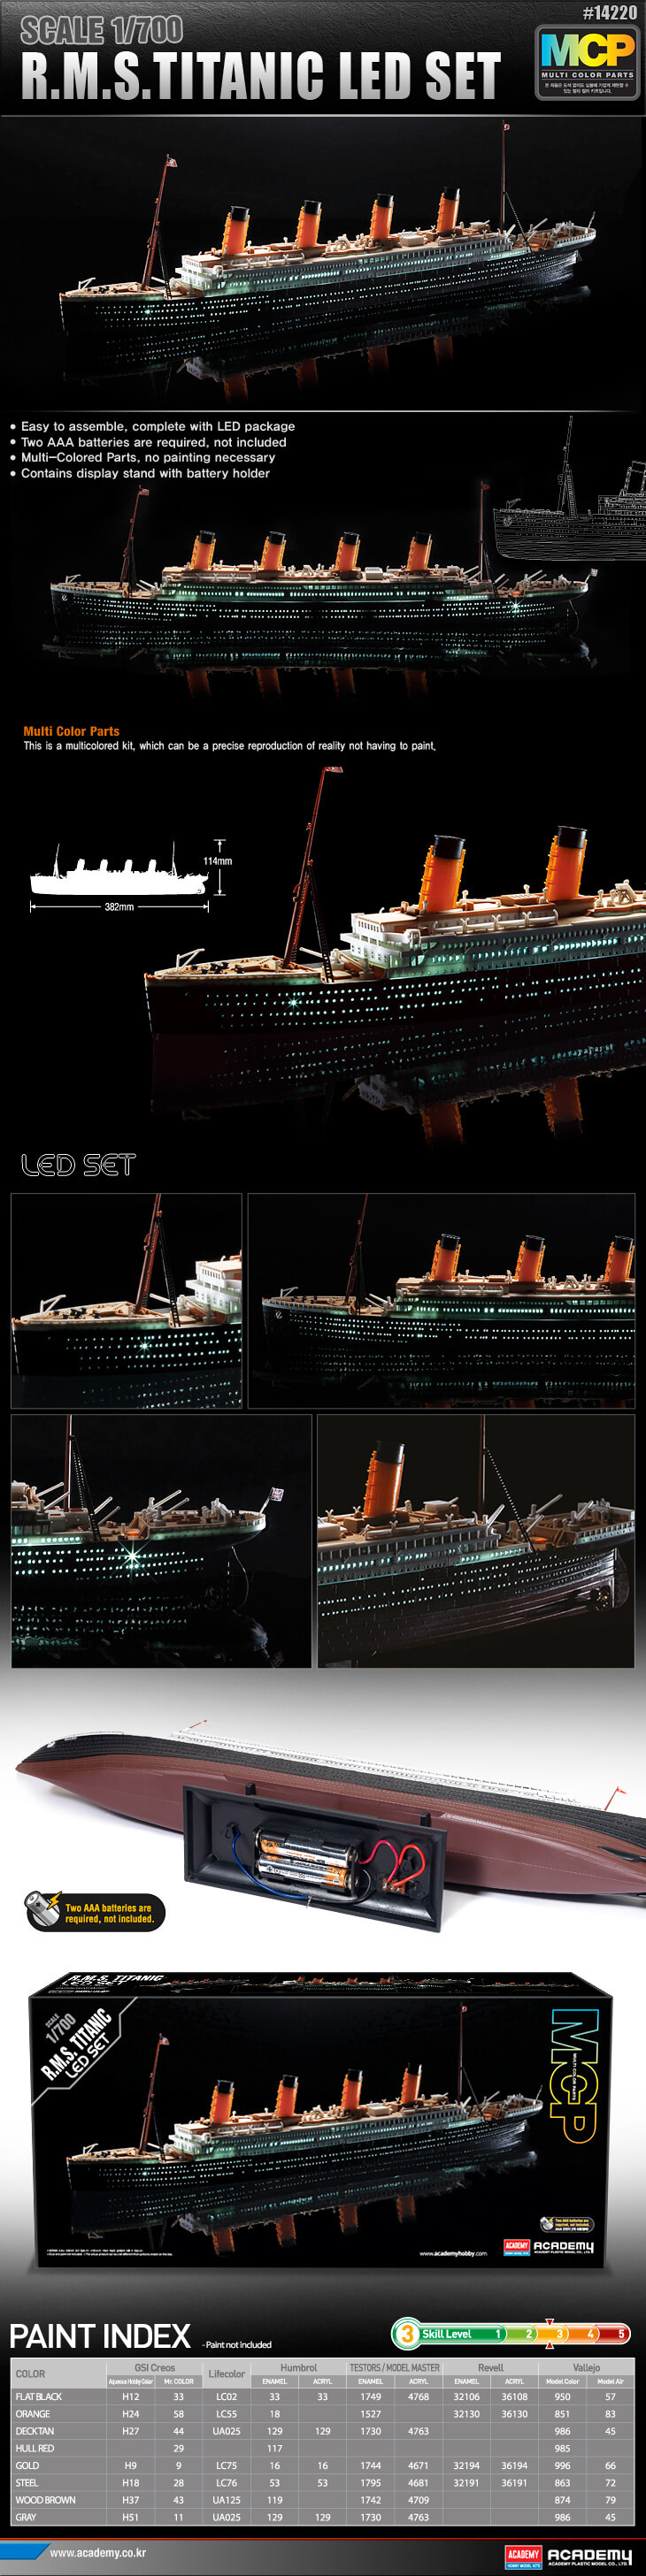 โมเดลเรือไททานิค ACADEMY R.M.S. TITANIC LED SET 1/700